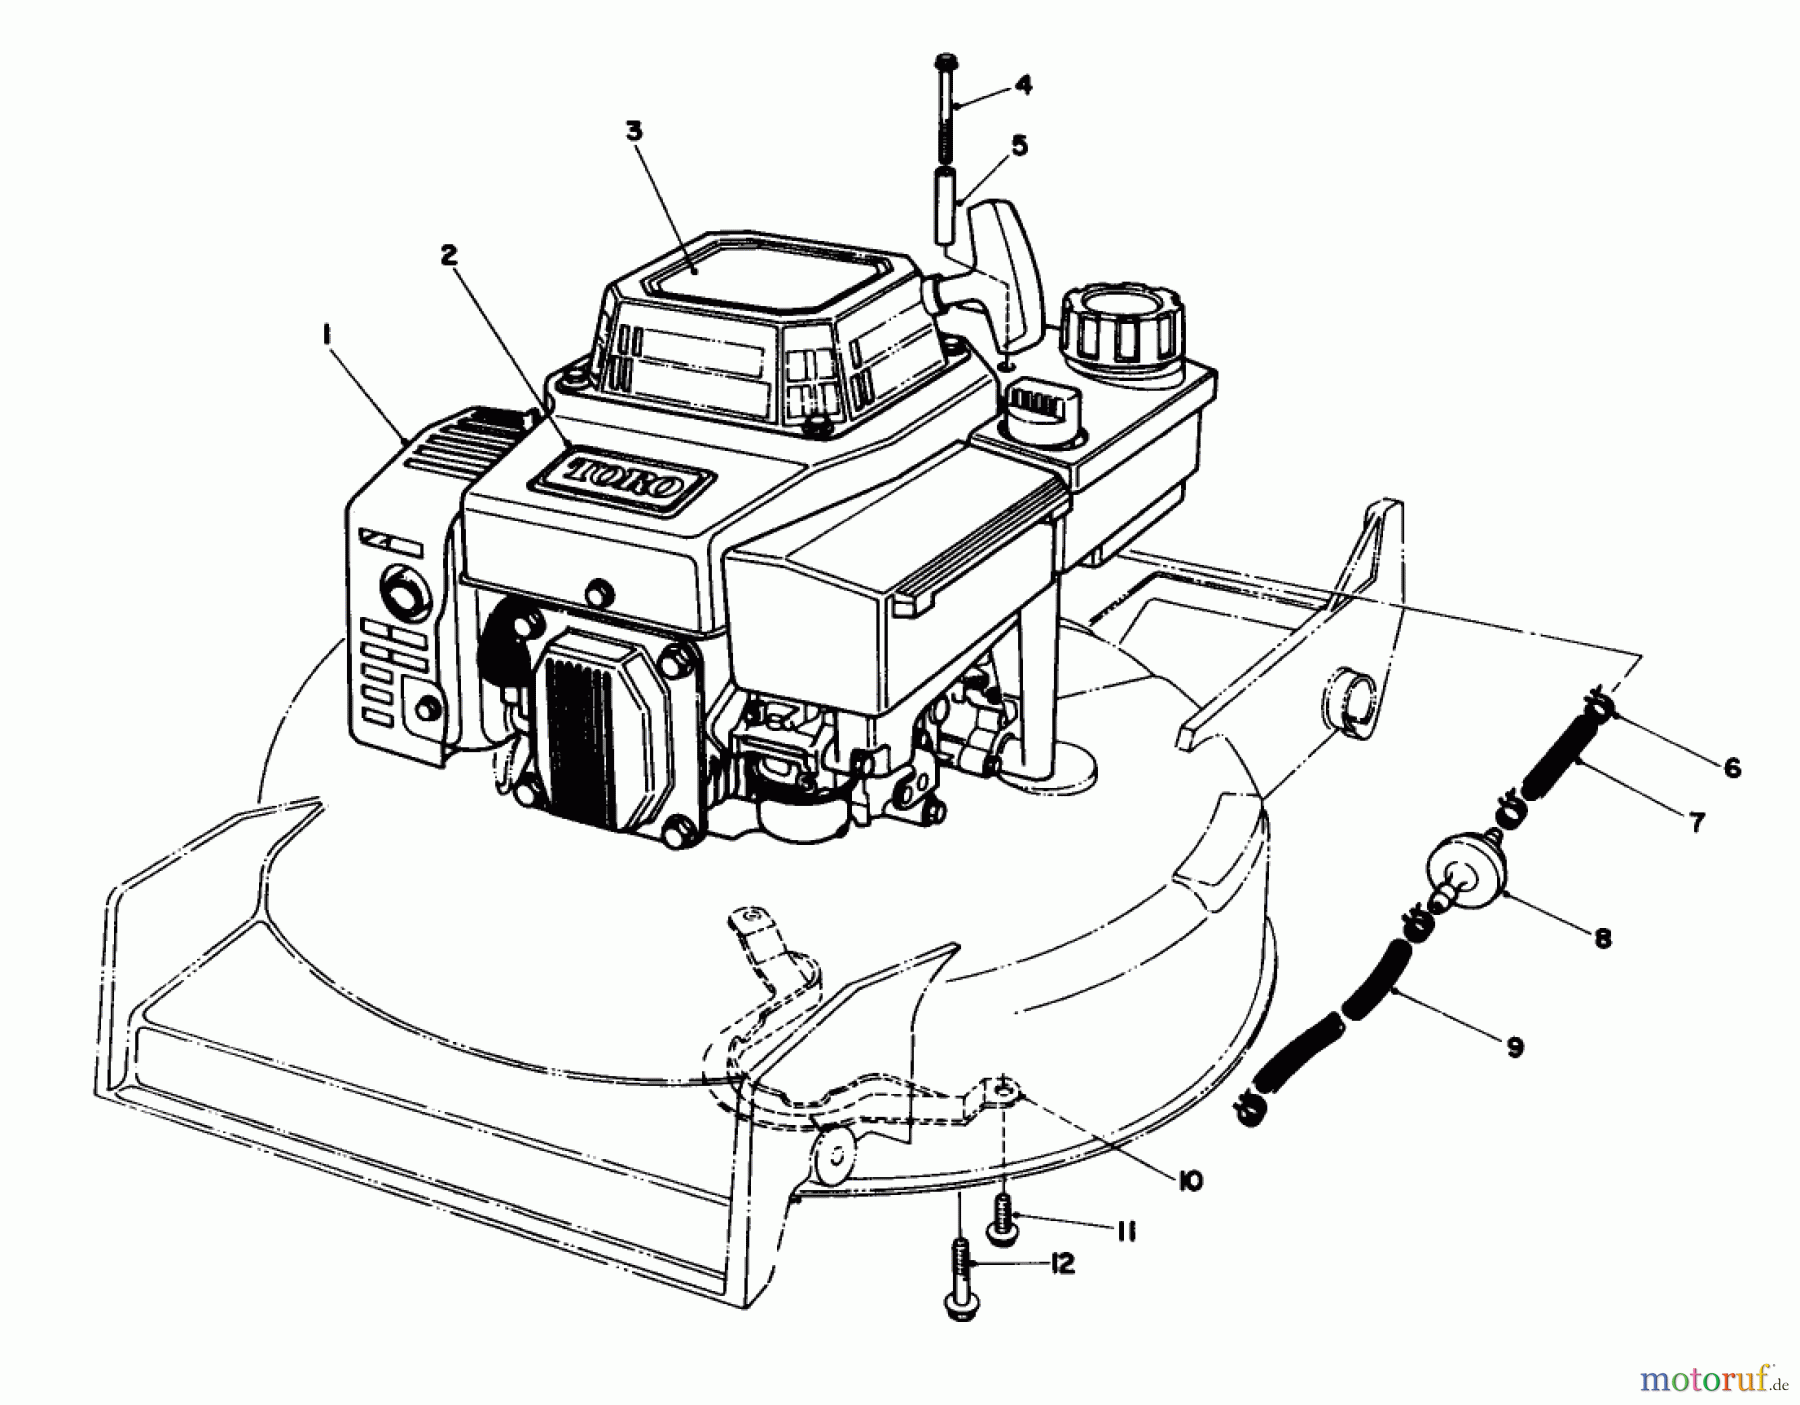  Toro Neu Mowers, Walk-Behind Seite 1 20622 - Toro Lawnmower, 1988 (8000001-8999999) ENGINE ASSEMBLY